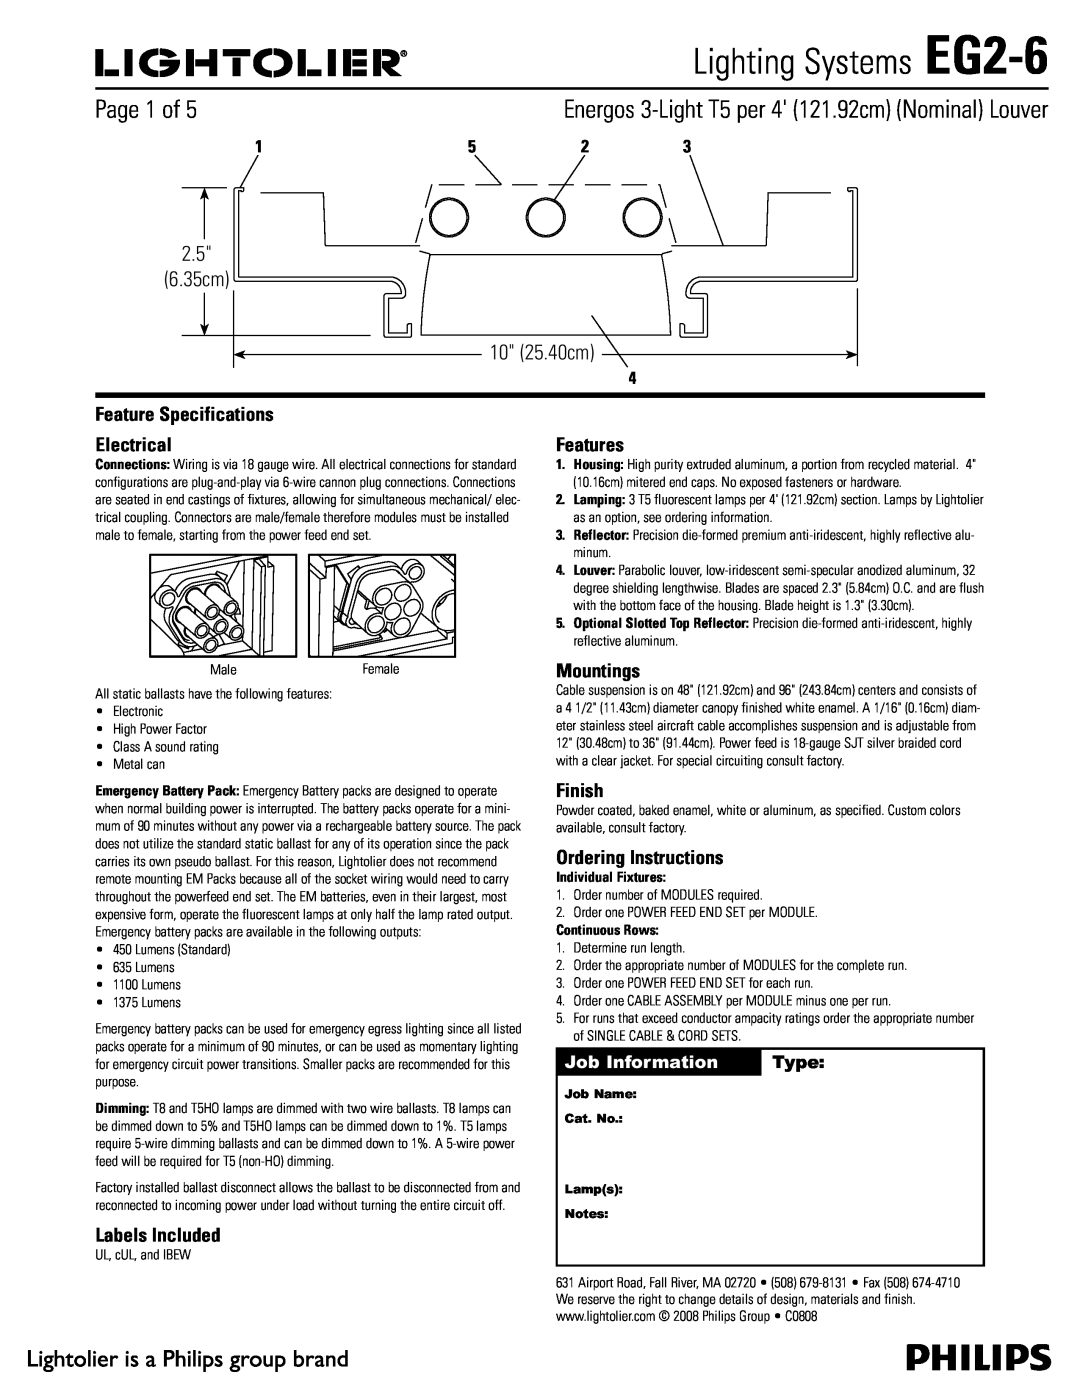 Lightolier specifications Lighting Systems EG2-6,  Dn  Dn, Job Information, Type 